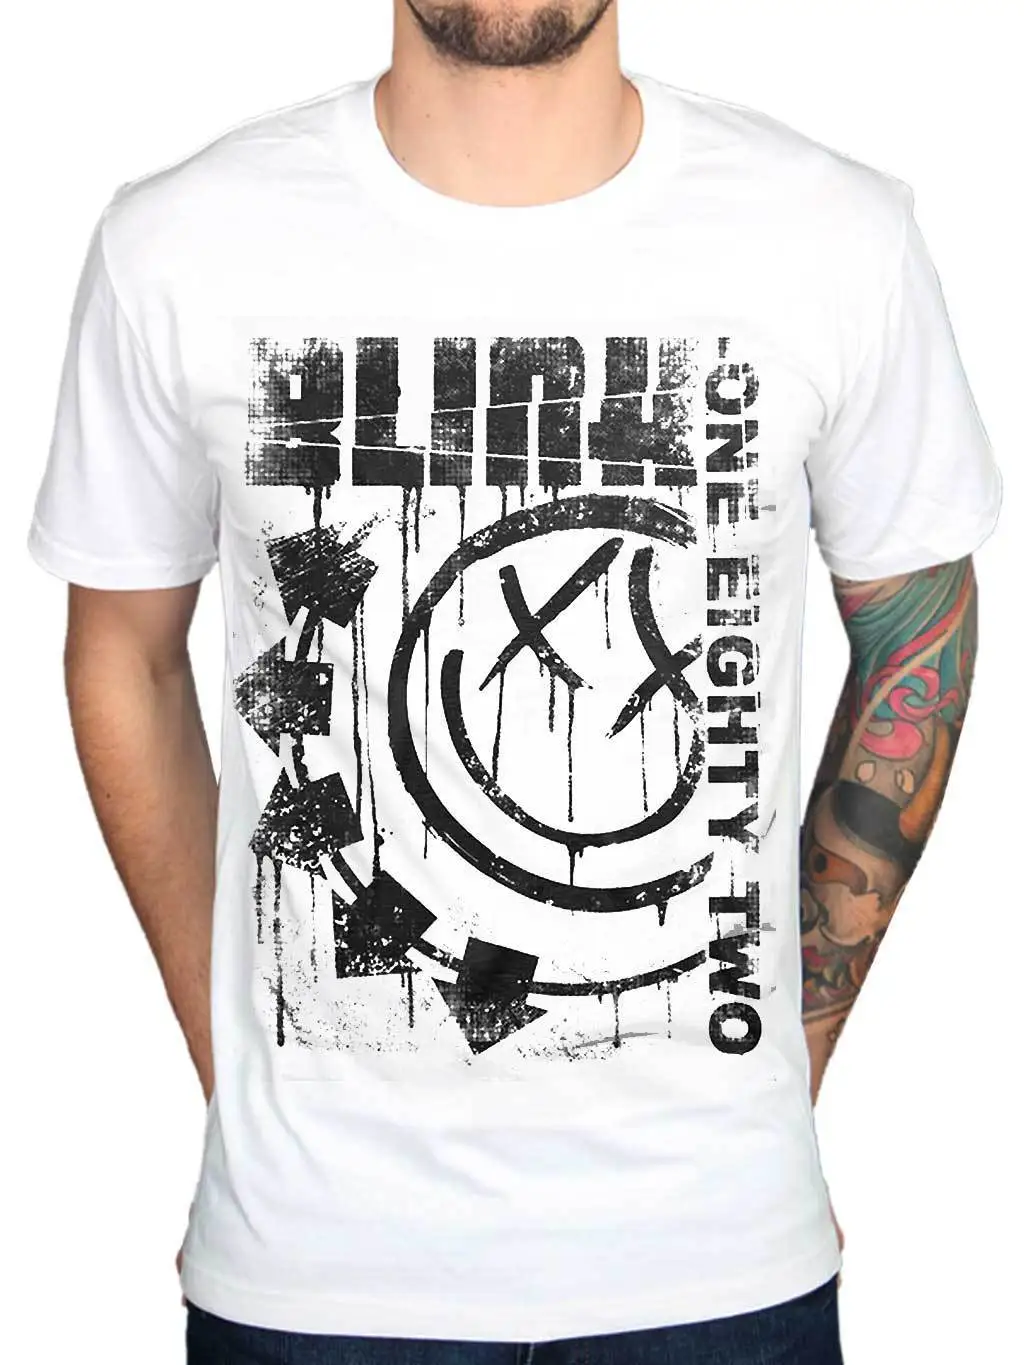 Официальный Blink 182 прописано jumbo печати футболка рок группы Мерч все размеры забавные короткий рукав хлопковая Футболка Топ Футболка